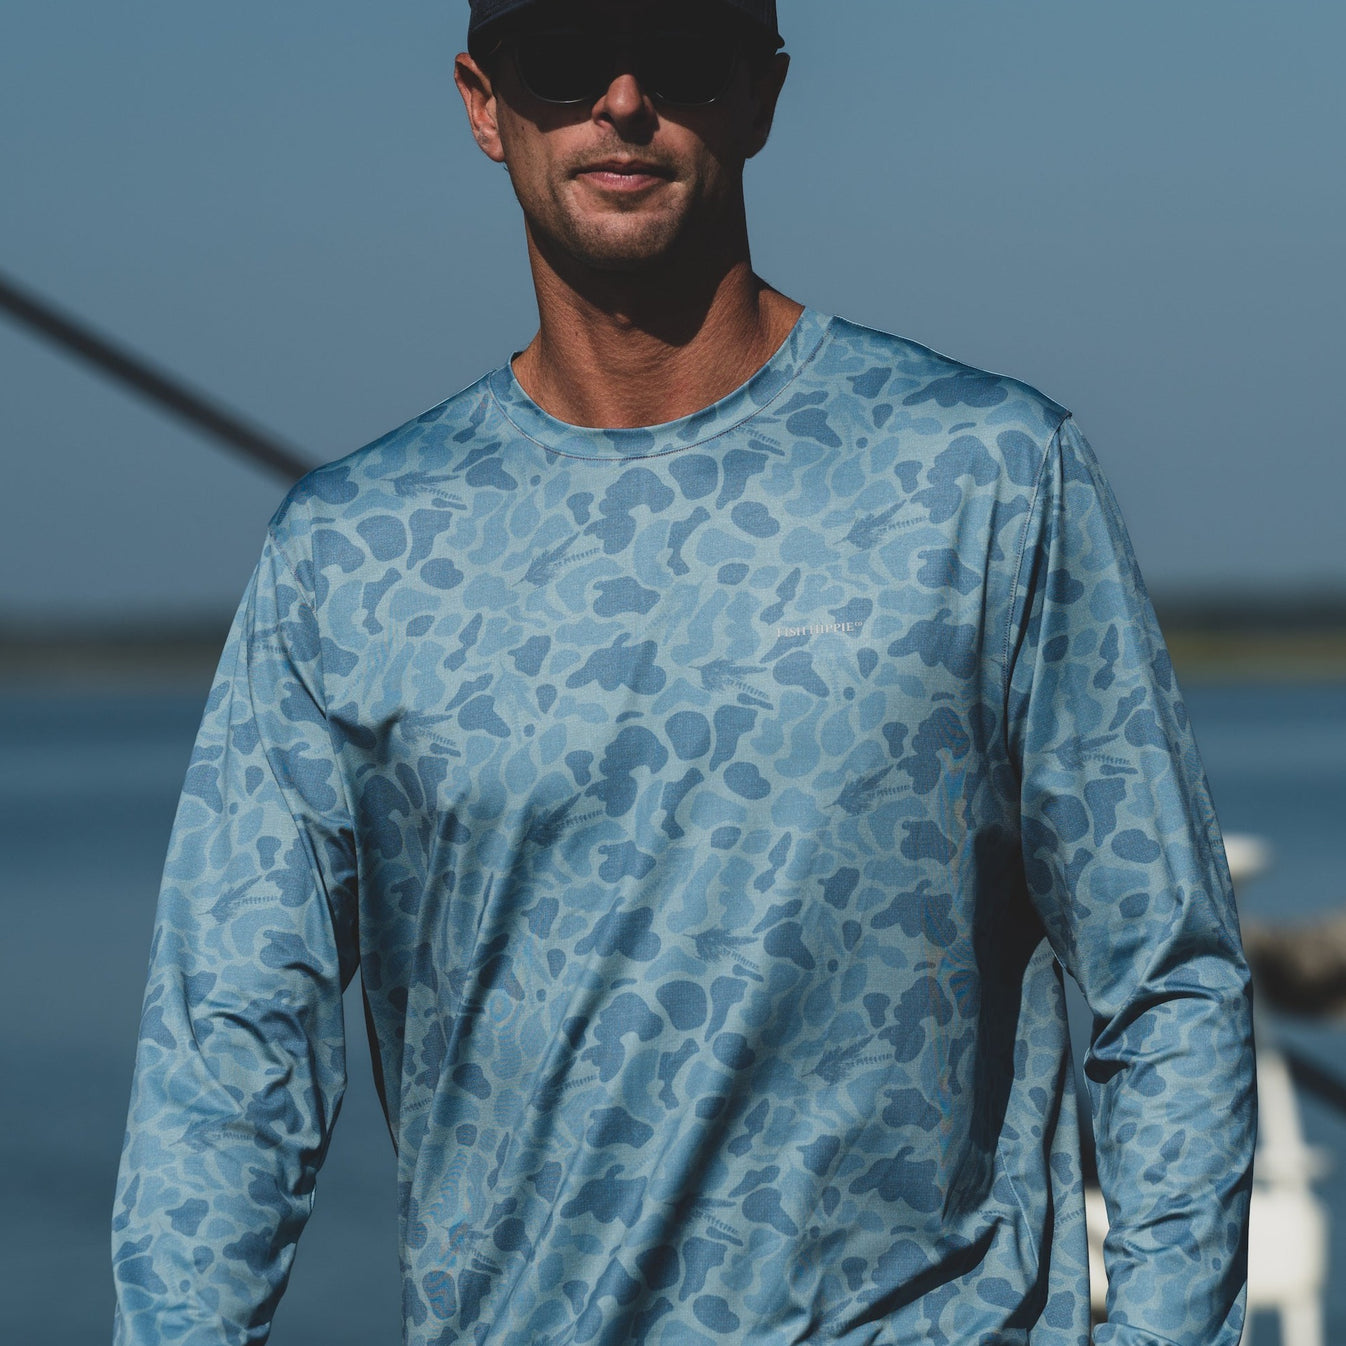 Fishing Shirts - Men's - Short Sleeve - Camo Fishing Shirt - FH